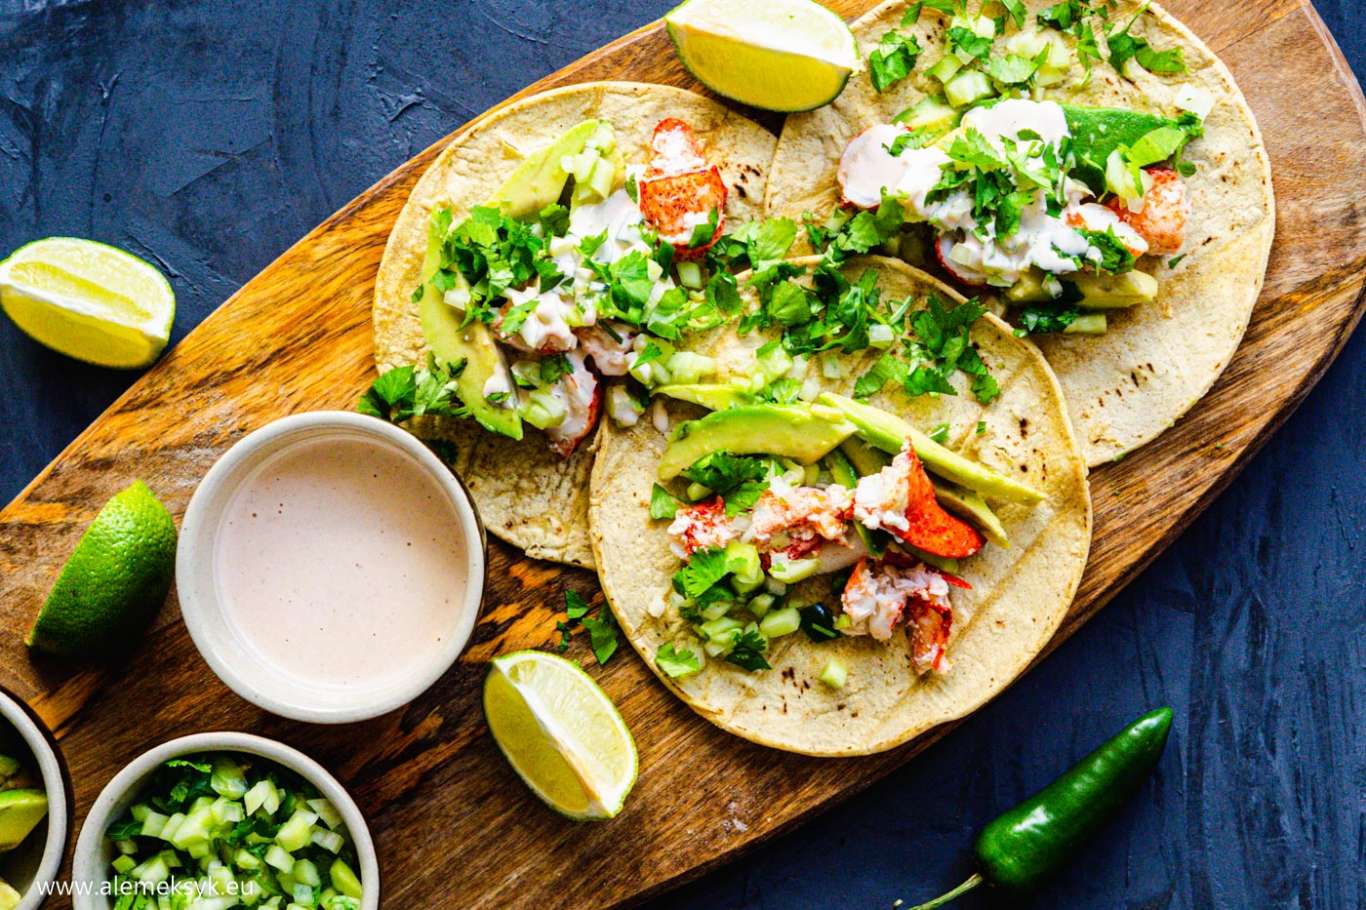 Taco de langosta - świetne połączenie homara z salsą pico de pepino i chipotle mayo